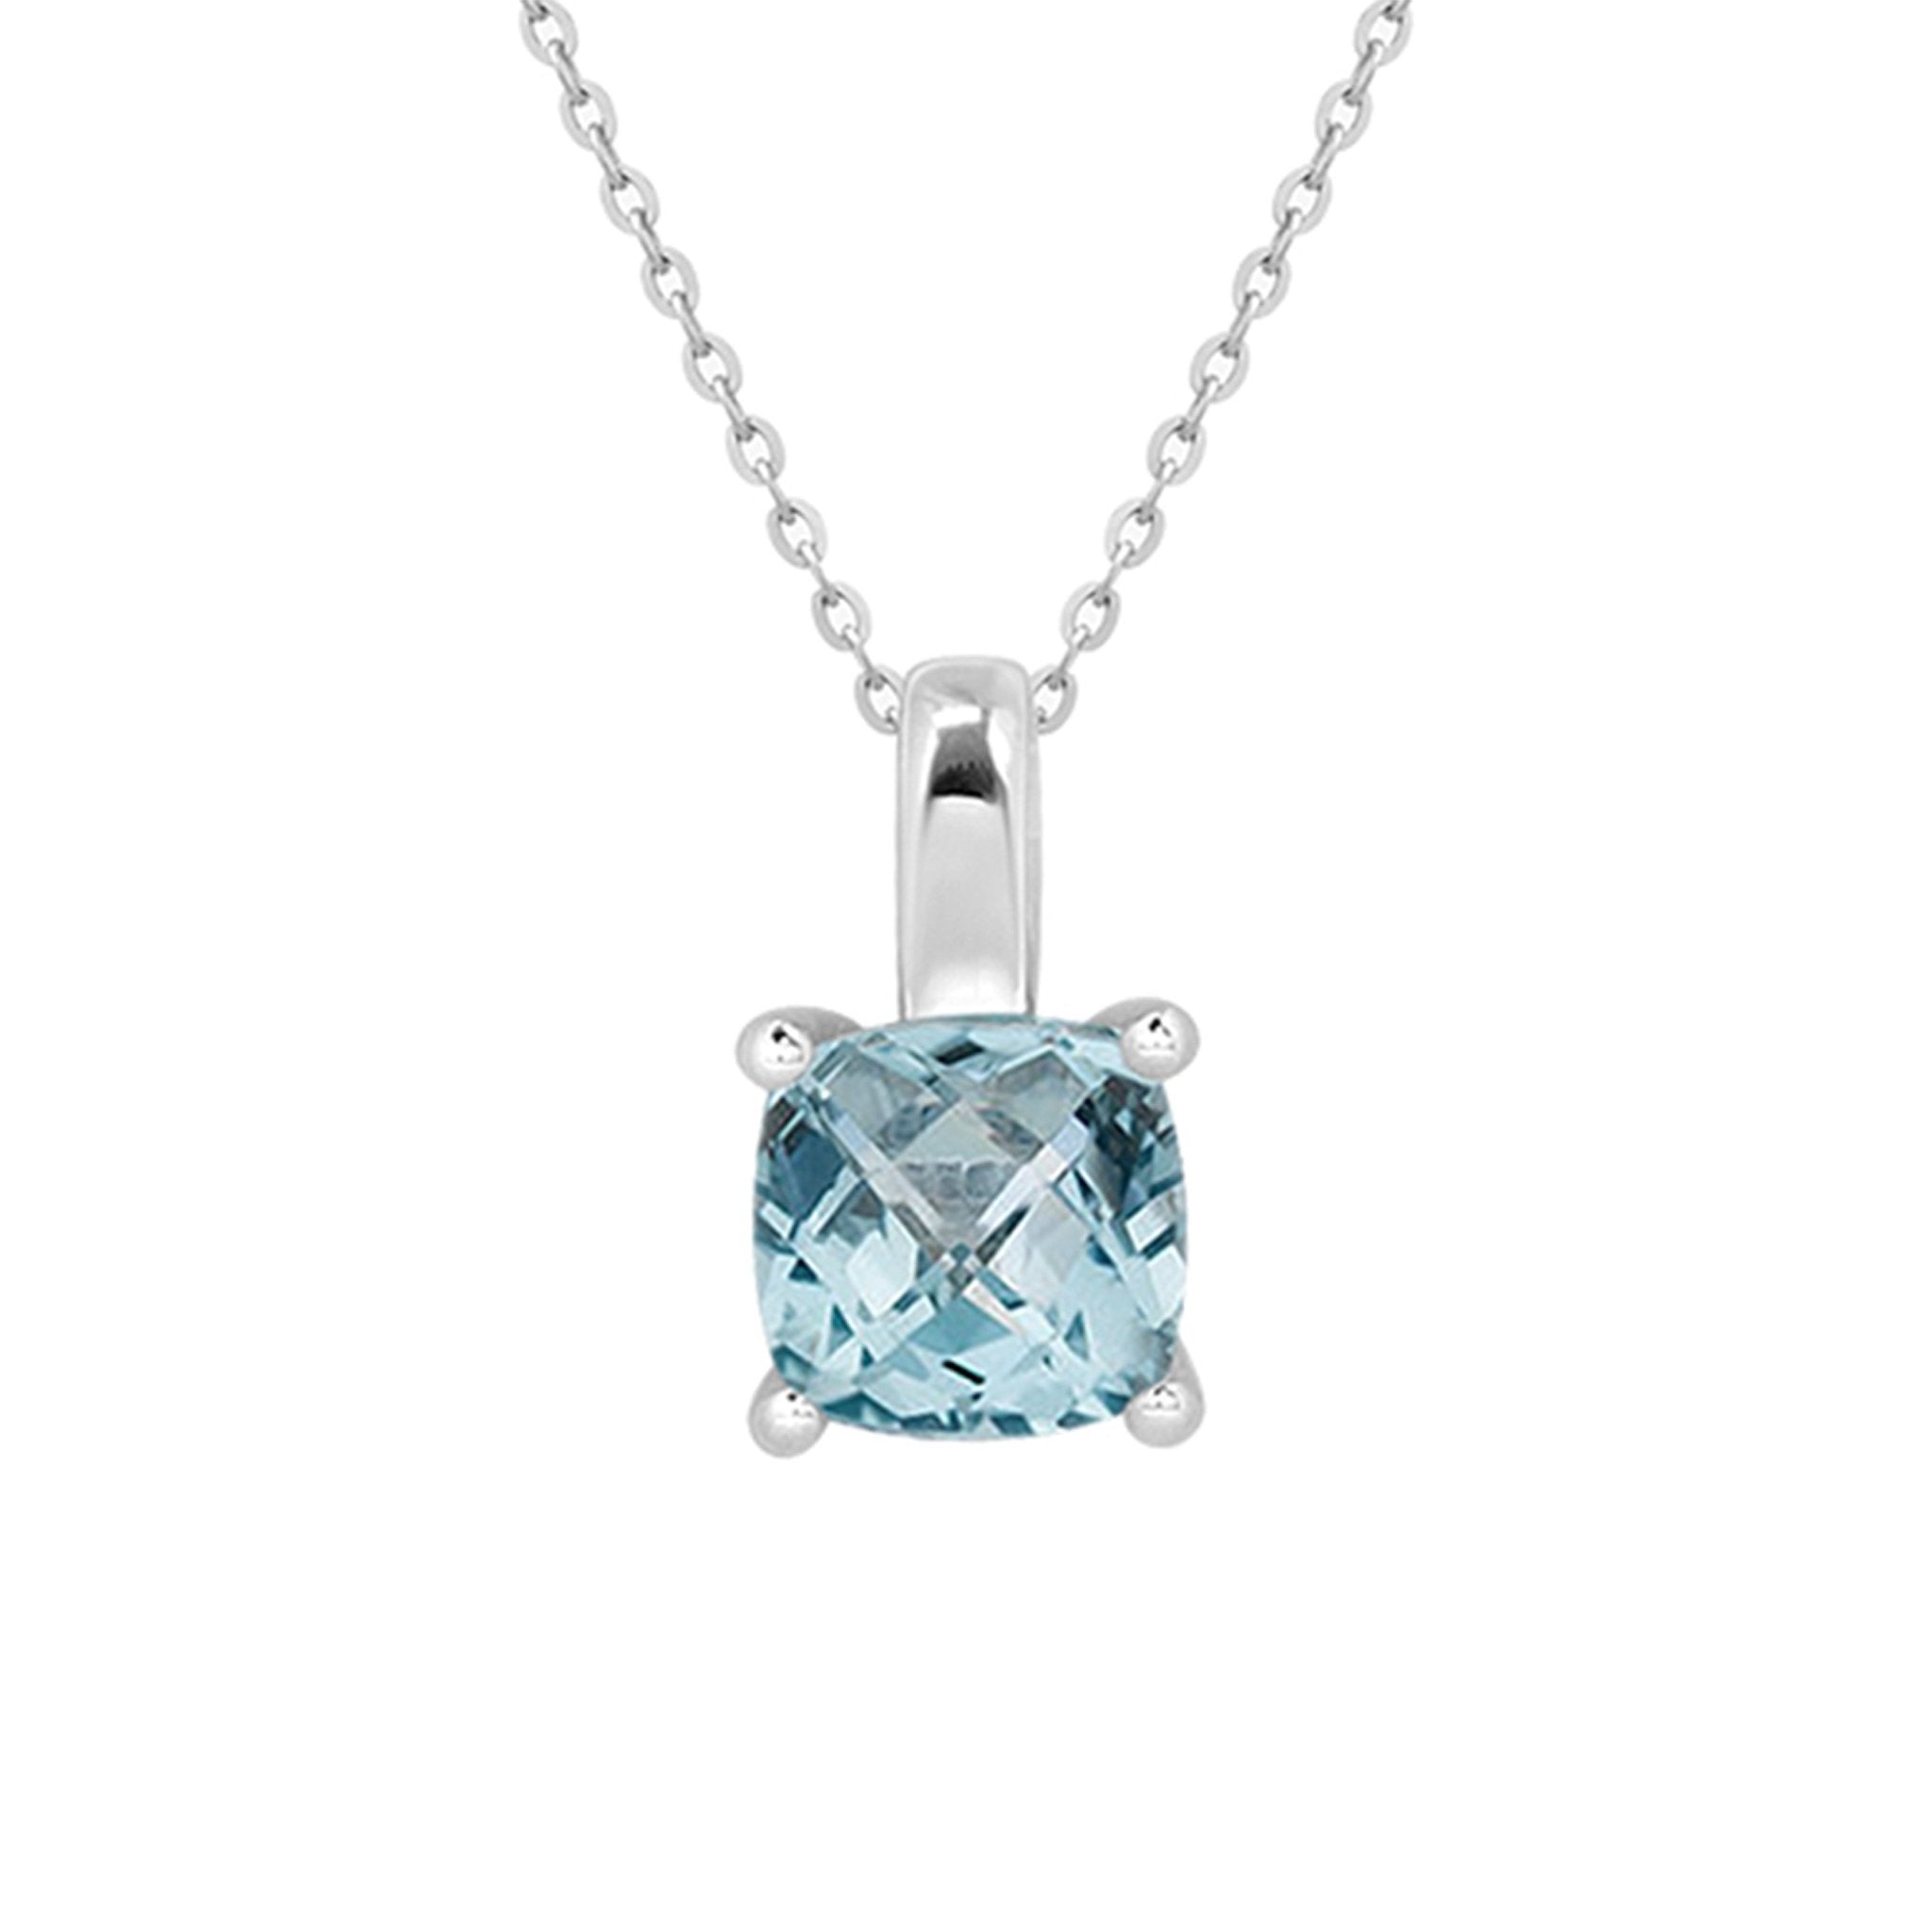 Cushion Cut Blue Topaz Pendant Necklace Necklaces Estella Collection #product_description# 14k Birthstone Blue Gemstone #tag4# #tag5# #tag6# #tag7# #tag8# #tag9# #tag10#